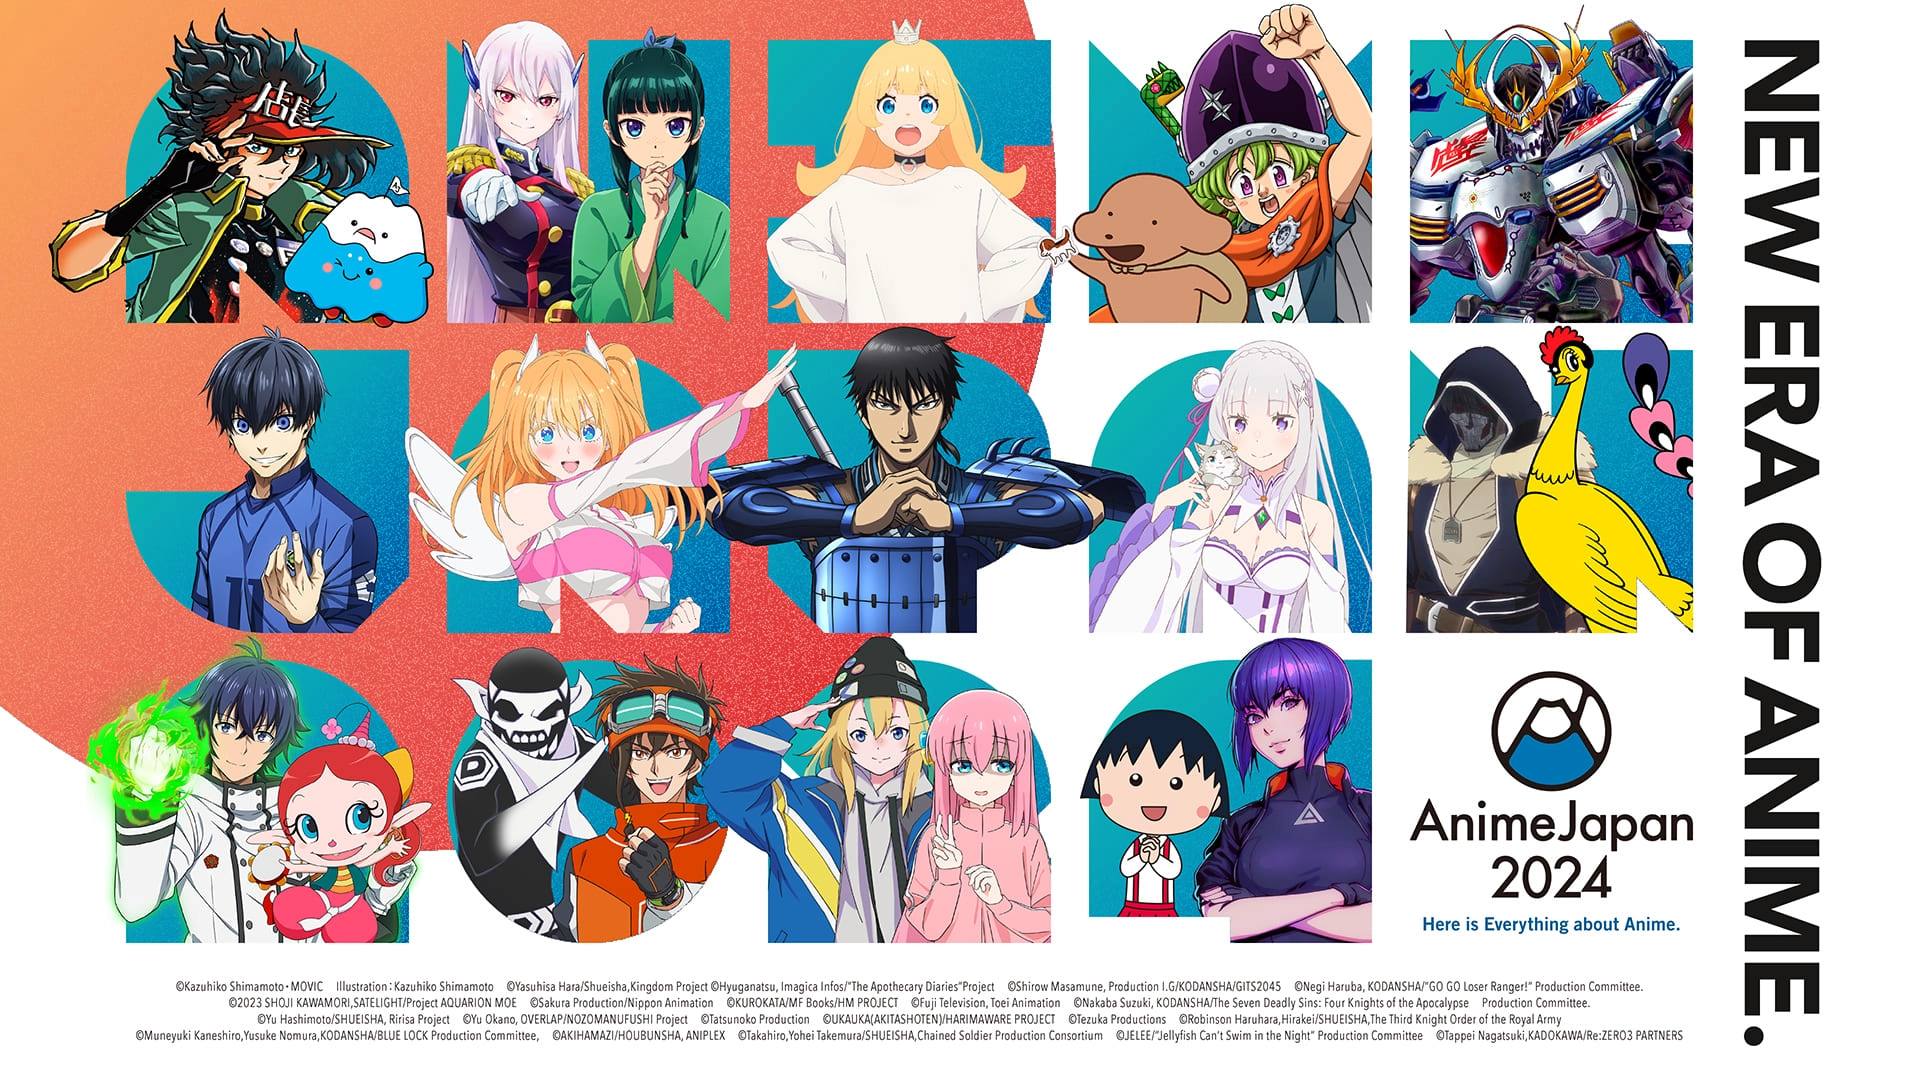 El popular evento AnimeJapan revela su line-up de anuncios en su edición 2024 - Coanime.net